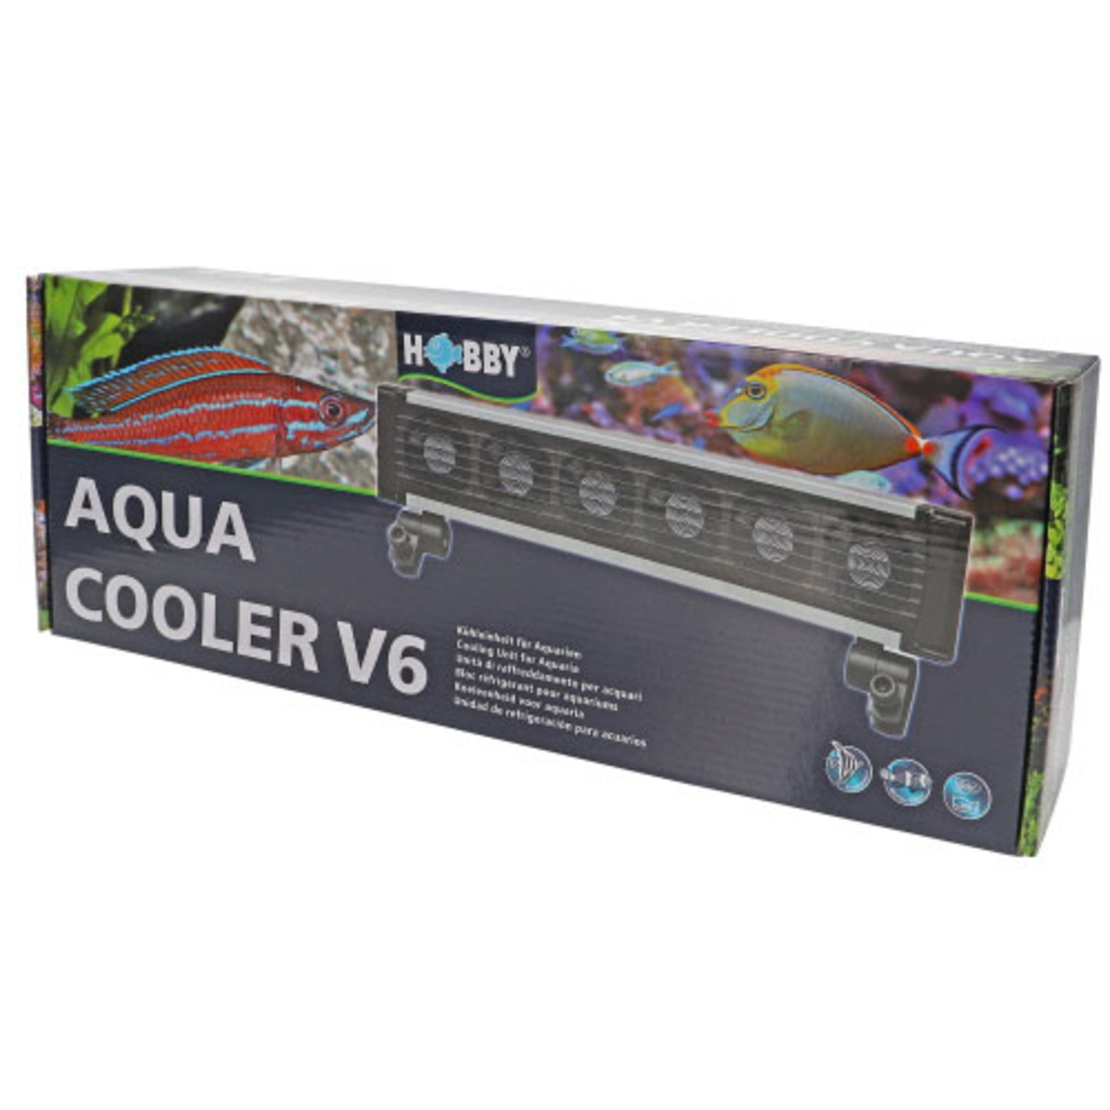 מאוורר לקירור אקווריום 6 יח' | Aqua Cooler V6